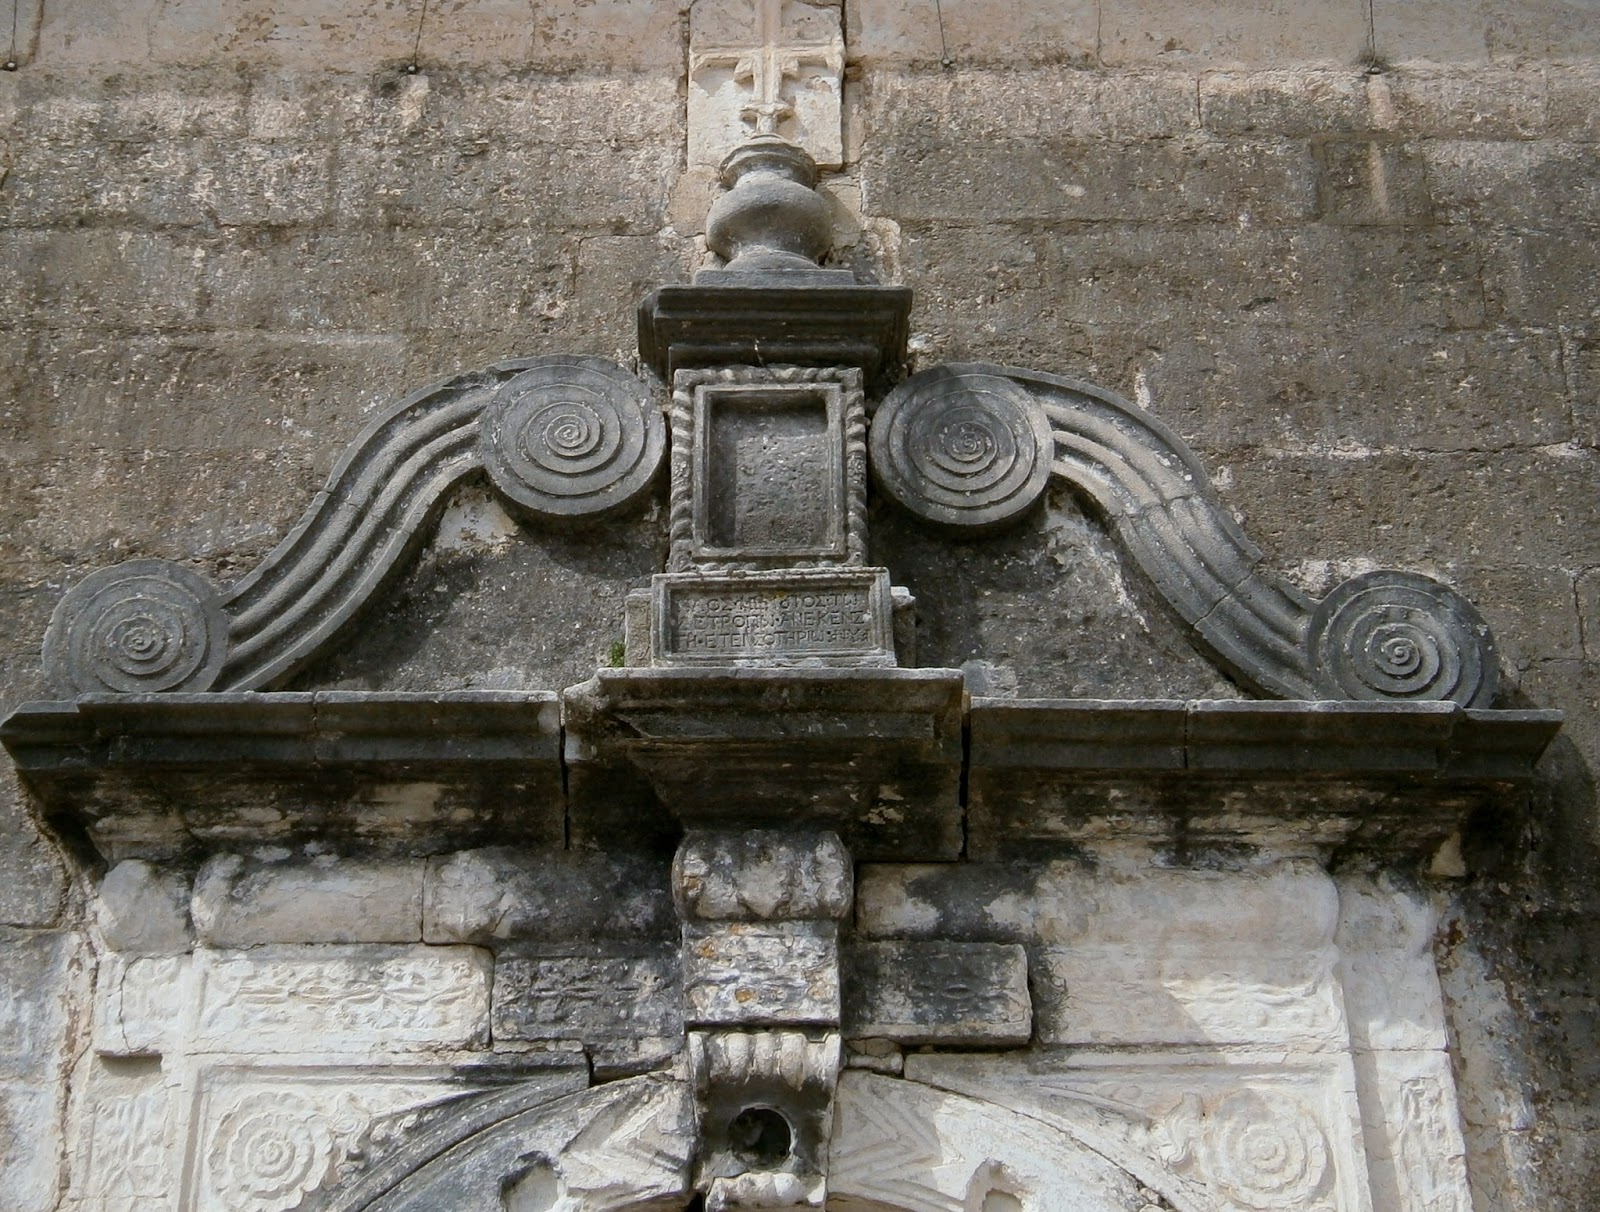 ναός του αγίου Σπυρίδωνα στη Λευκάδα